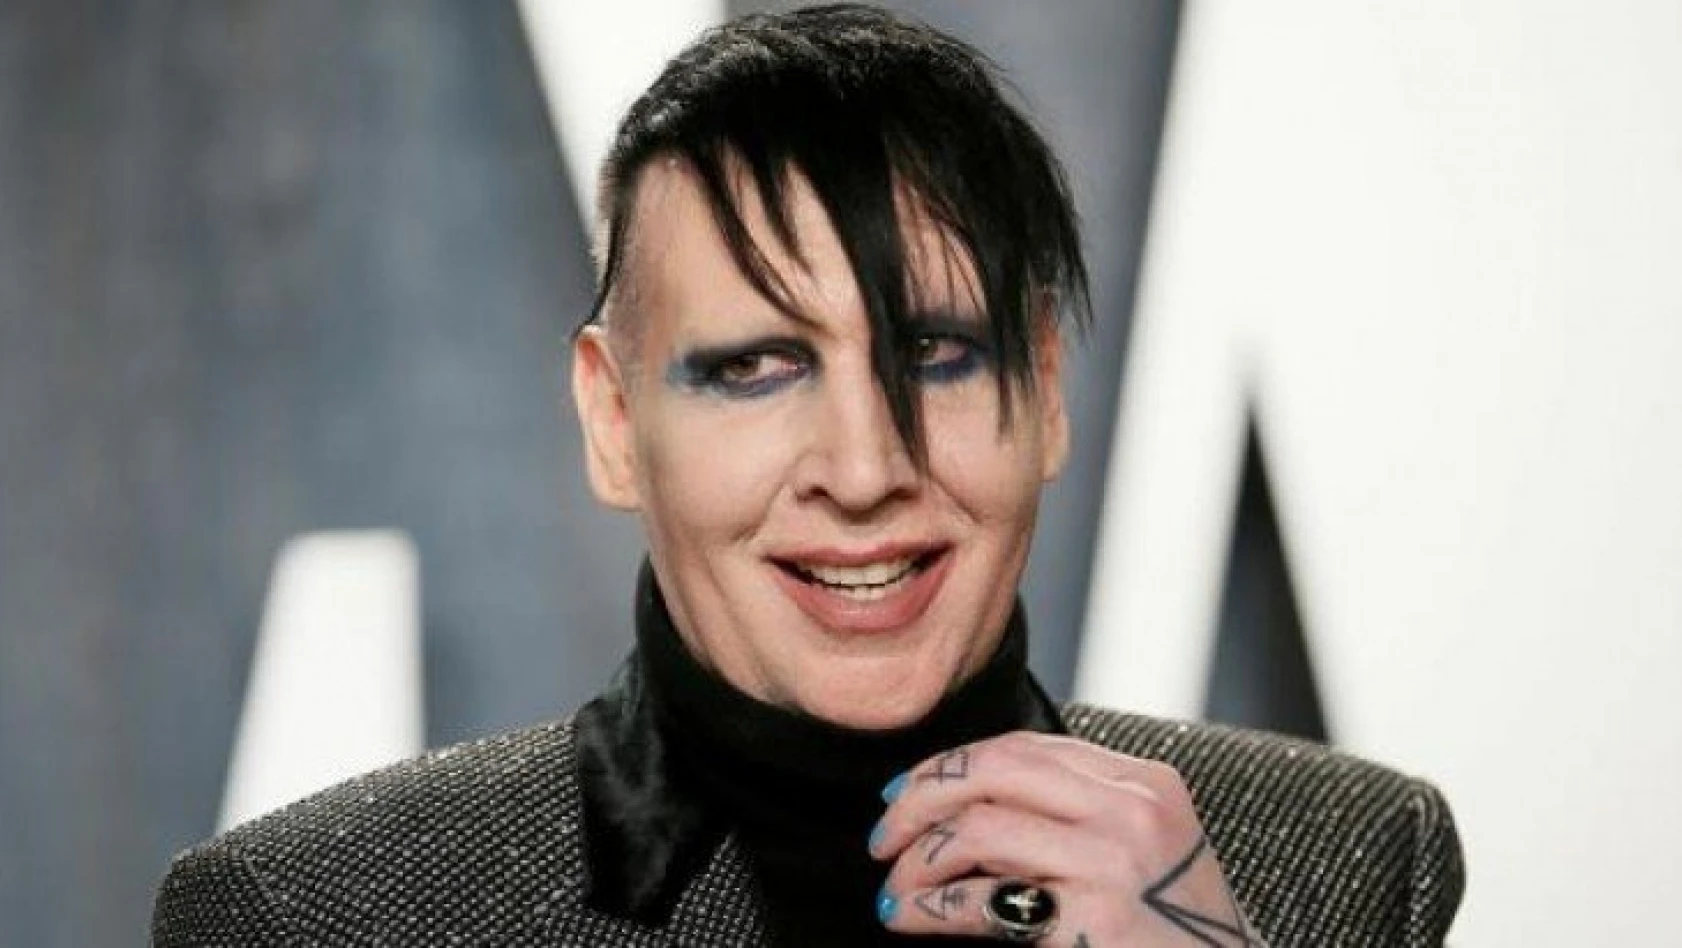 Dünya bu haberle çalkalandı! Rock yıldızı Marilyn Manson'un evinden tecavüz odası çıktı!